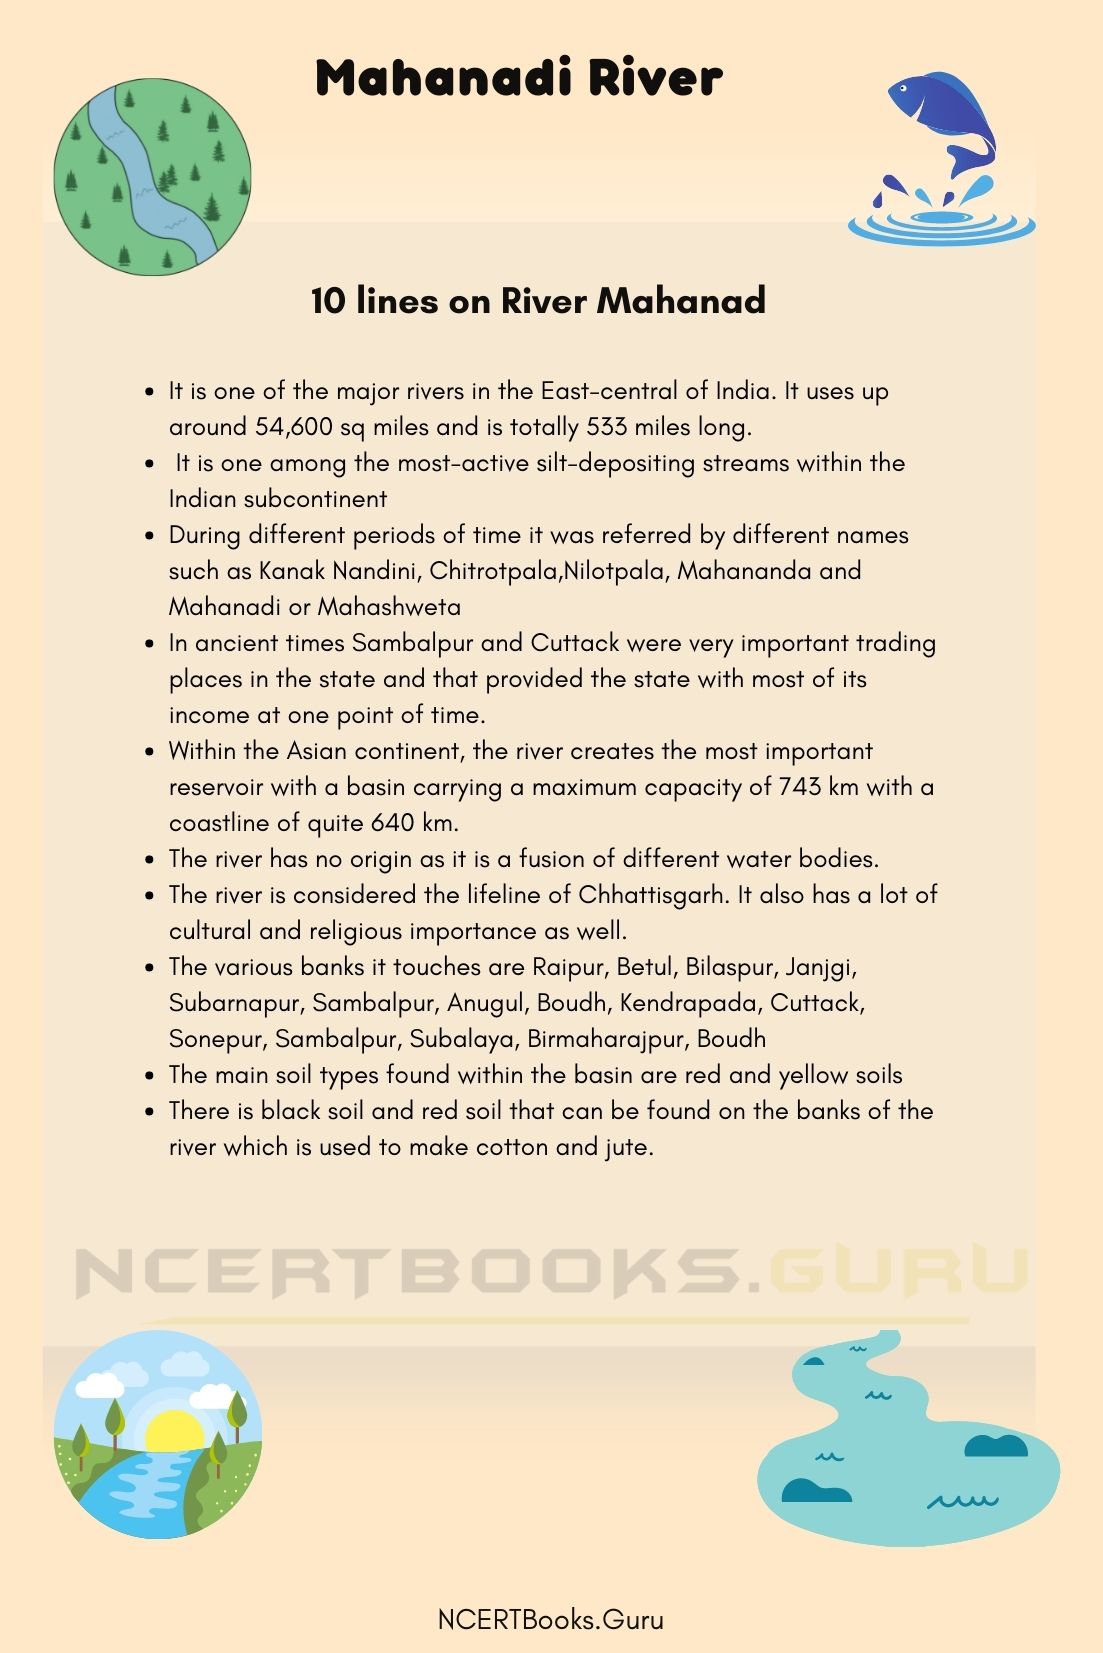 Mahanadi River